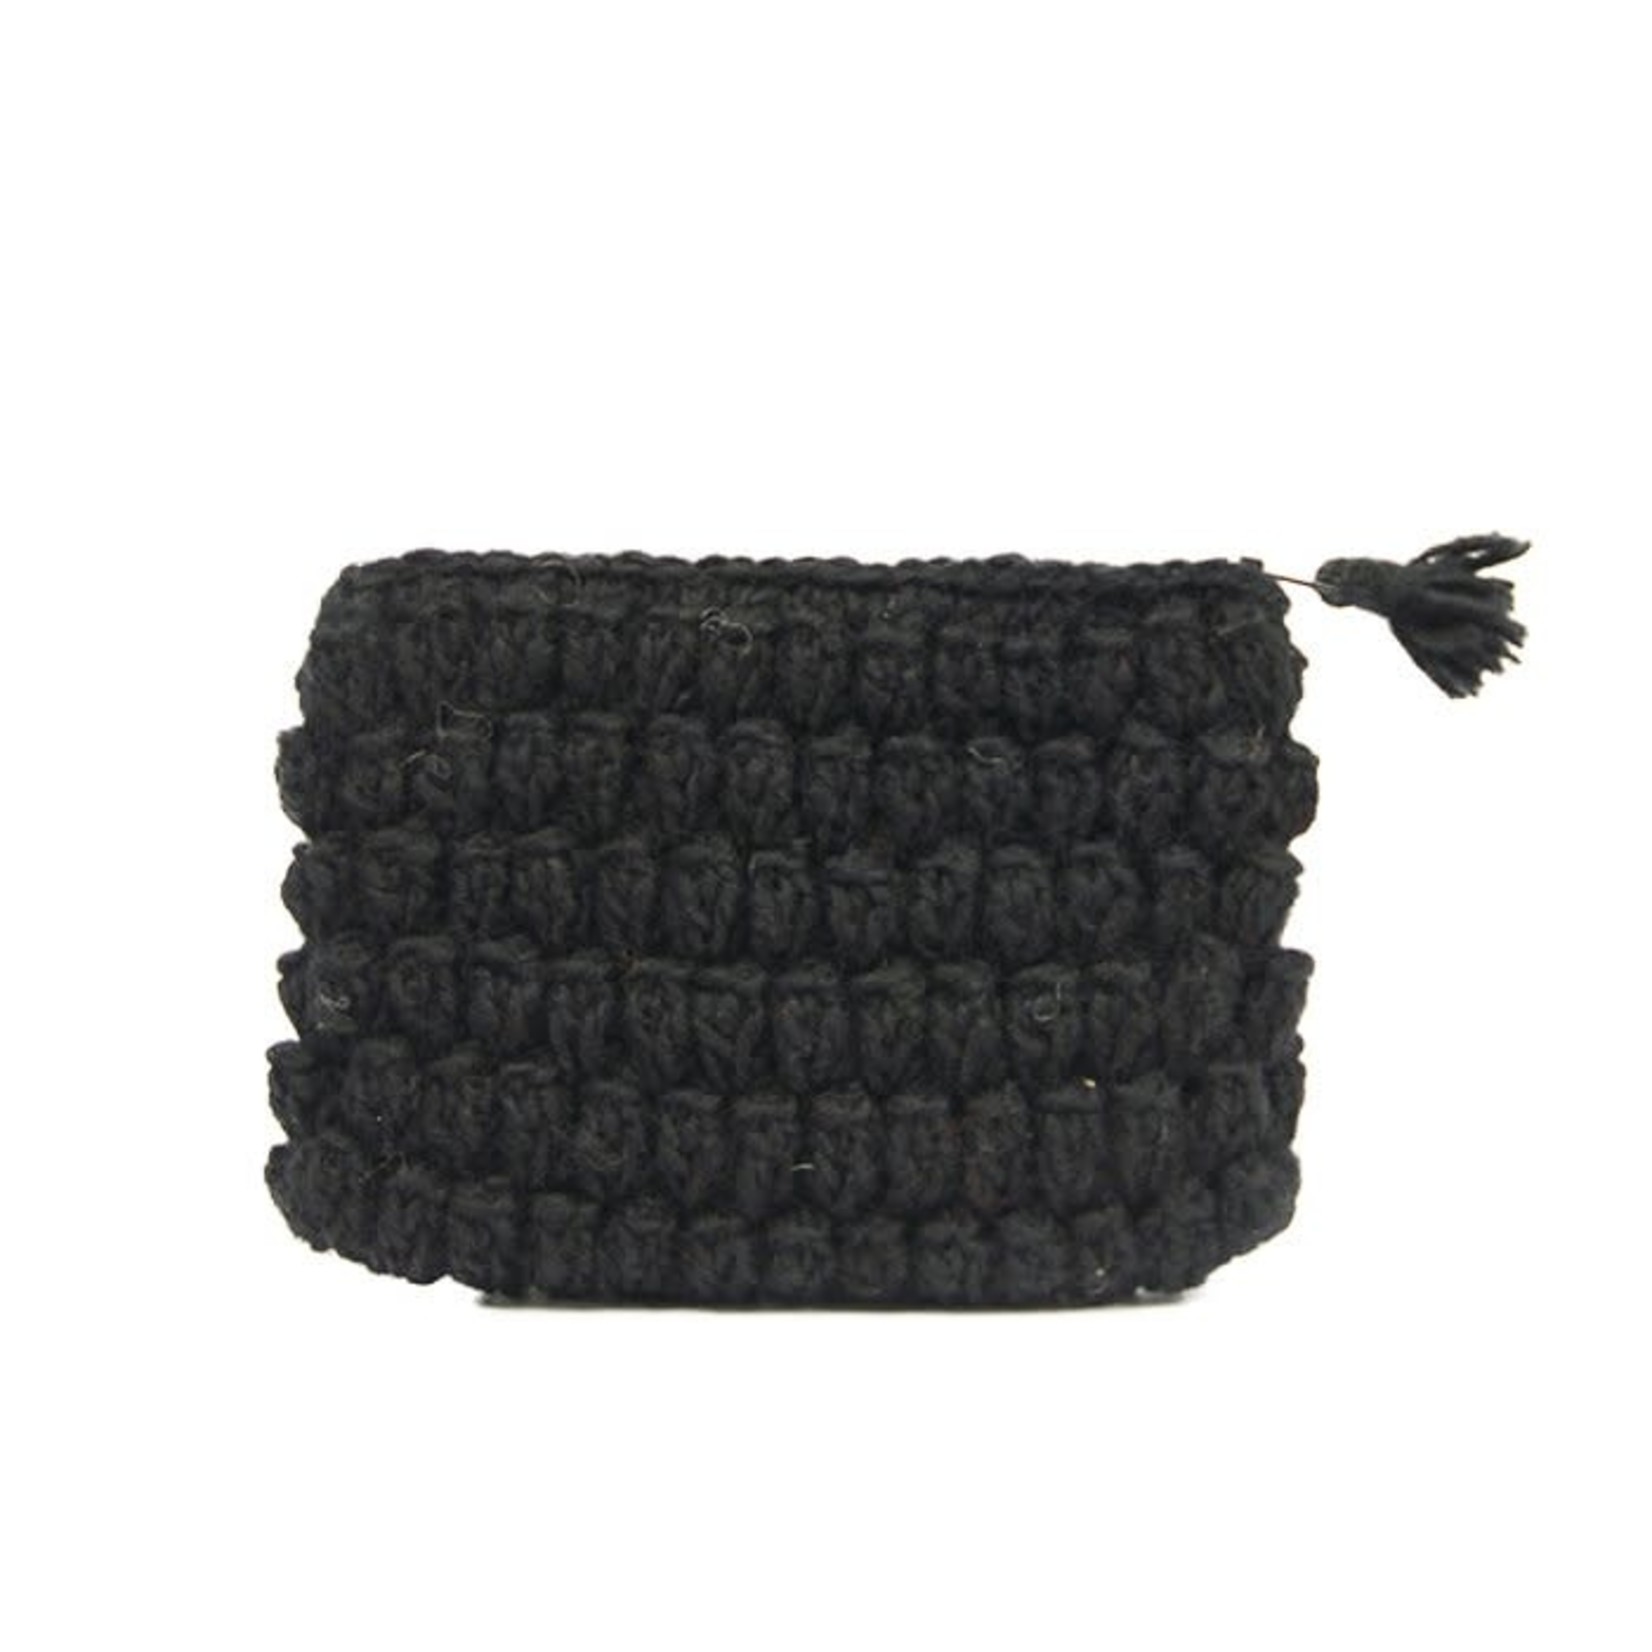 ANNA NERA Pouches bag Crochet Black 10x15